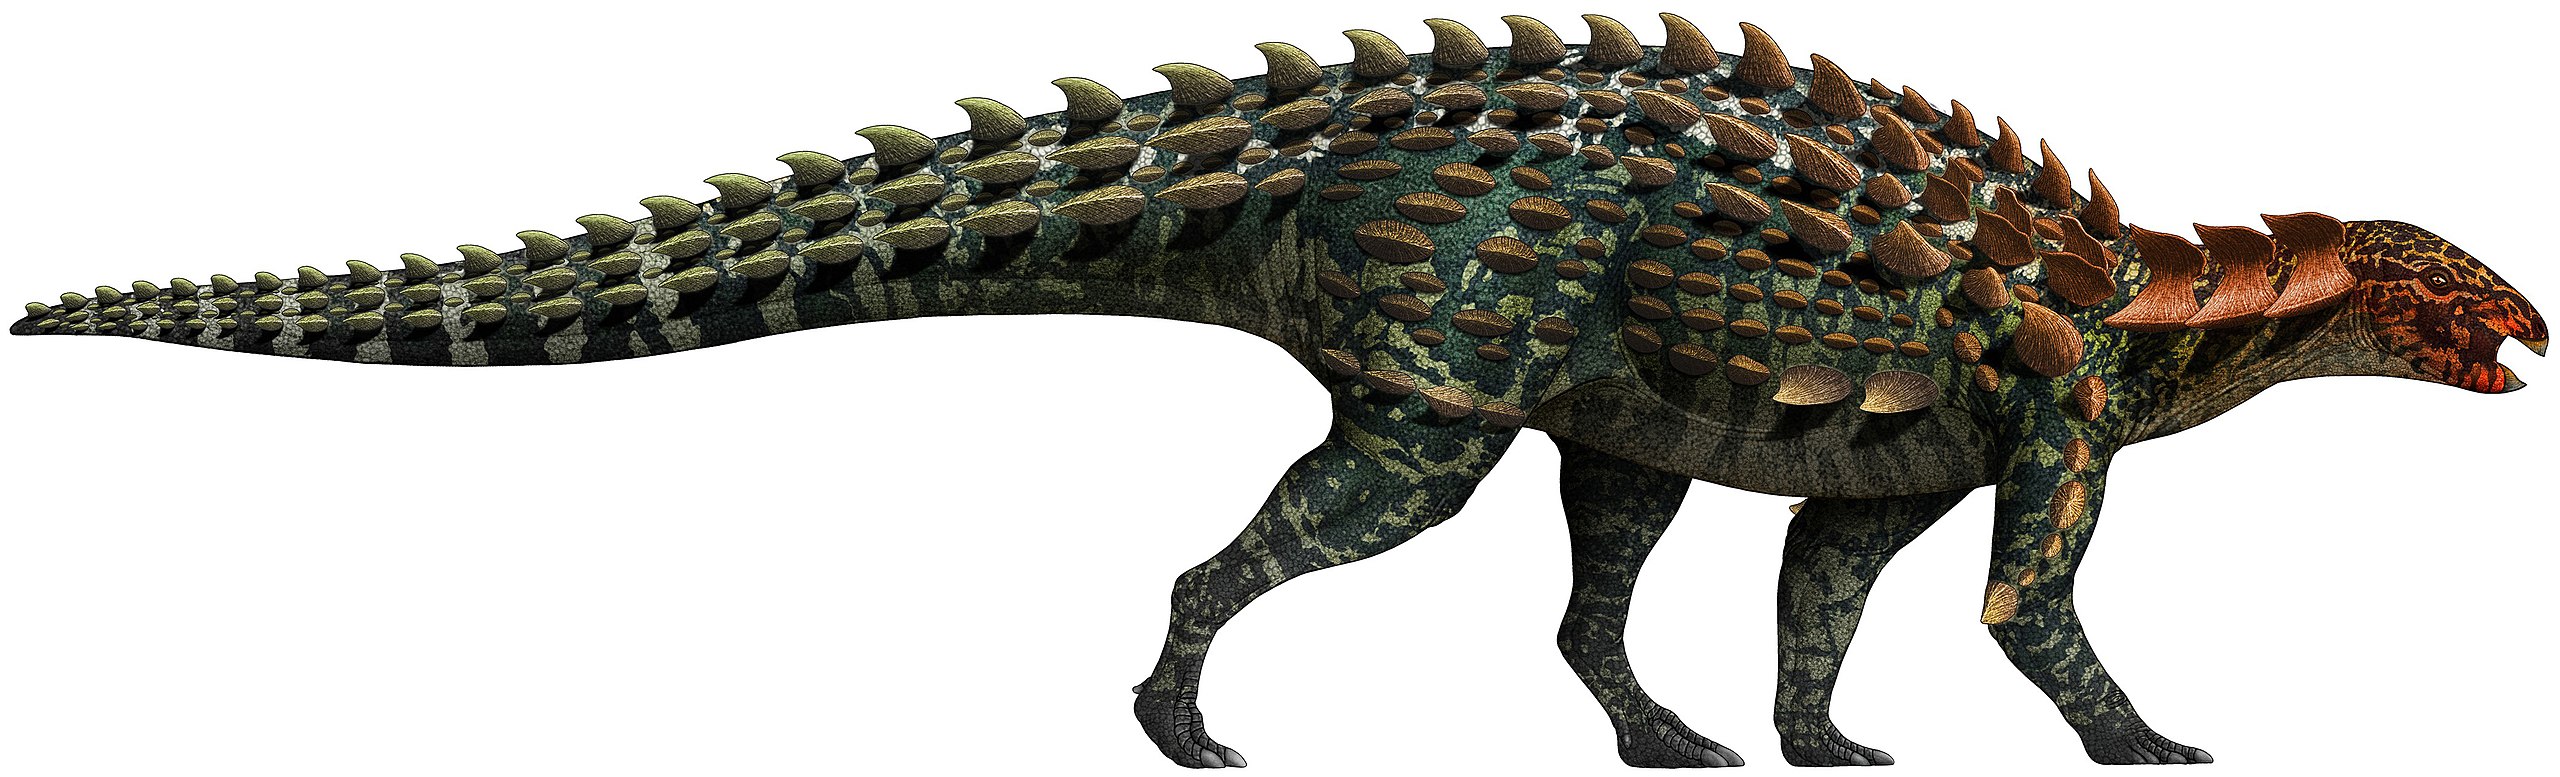 Yuxisaurus kopchicki je jedním z nejstarších a vývojově nejprimitivnějších zástupců skupiny Thyreophora, tedy tzv. obrněných dinosaurů. Tento asi 4 metry dlouhý ptakopánvý dinosaurus žil počátkem jurského období na území dnešní čínské provincie Jün-n